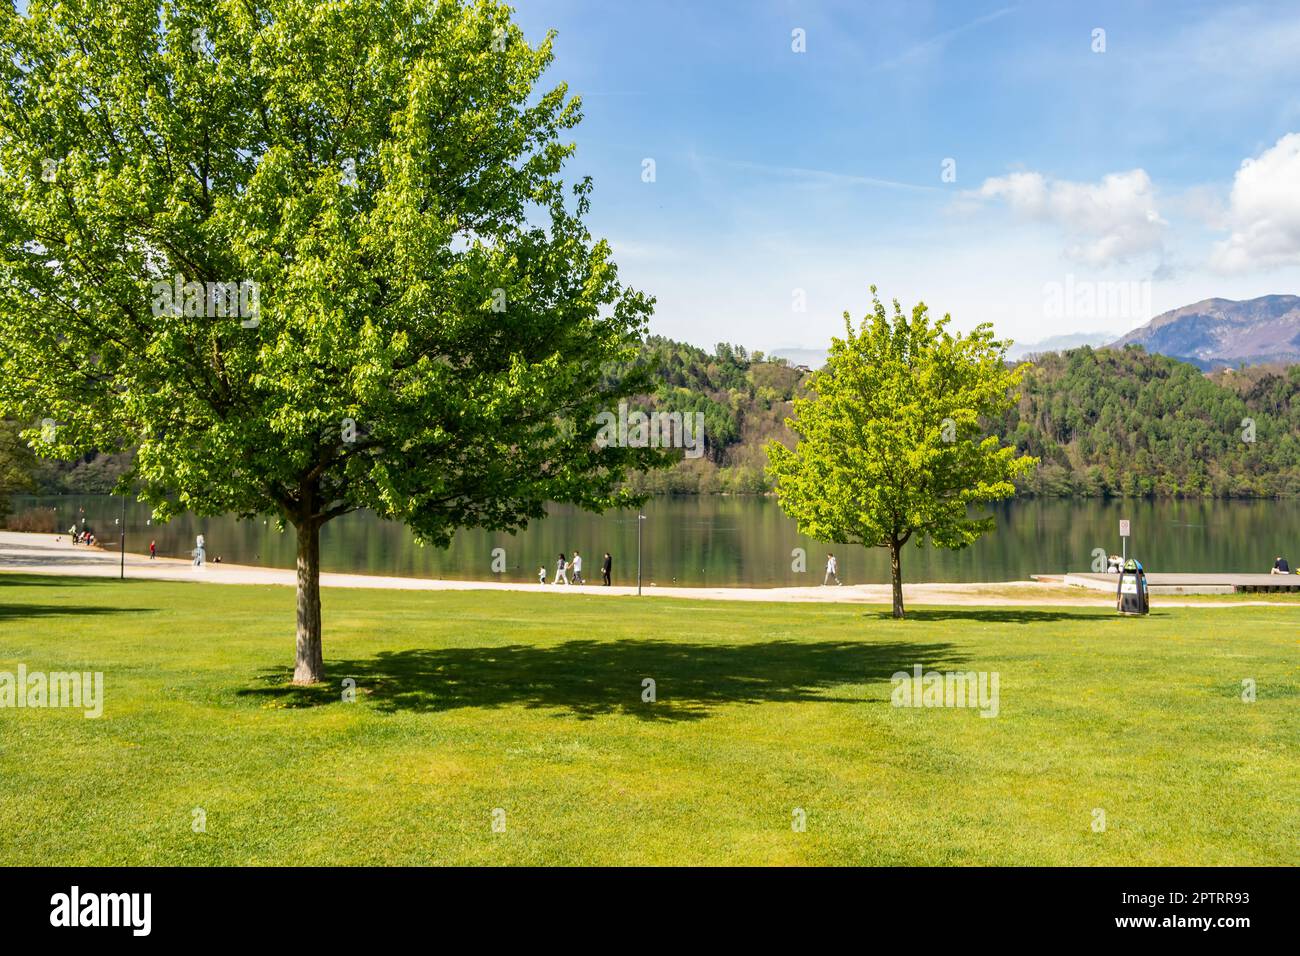 Vista del parque del lago Levico. Trentino Alto Adige, Italia Foto de stock